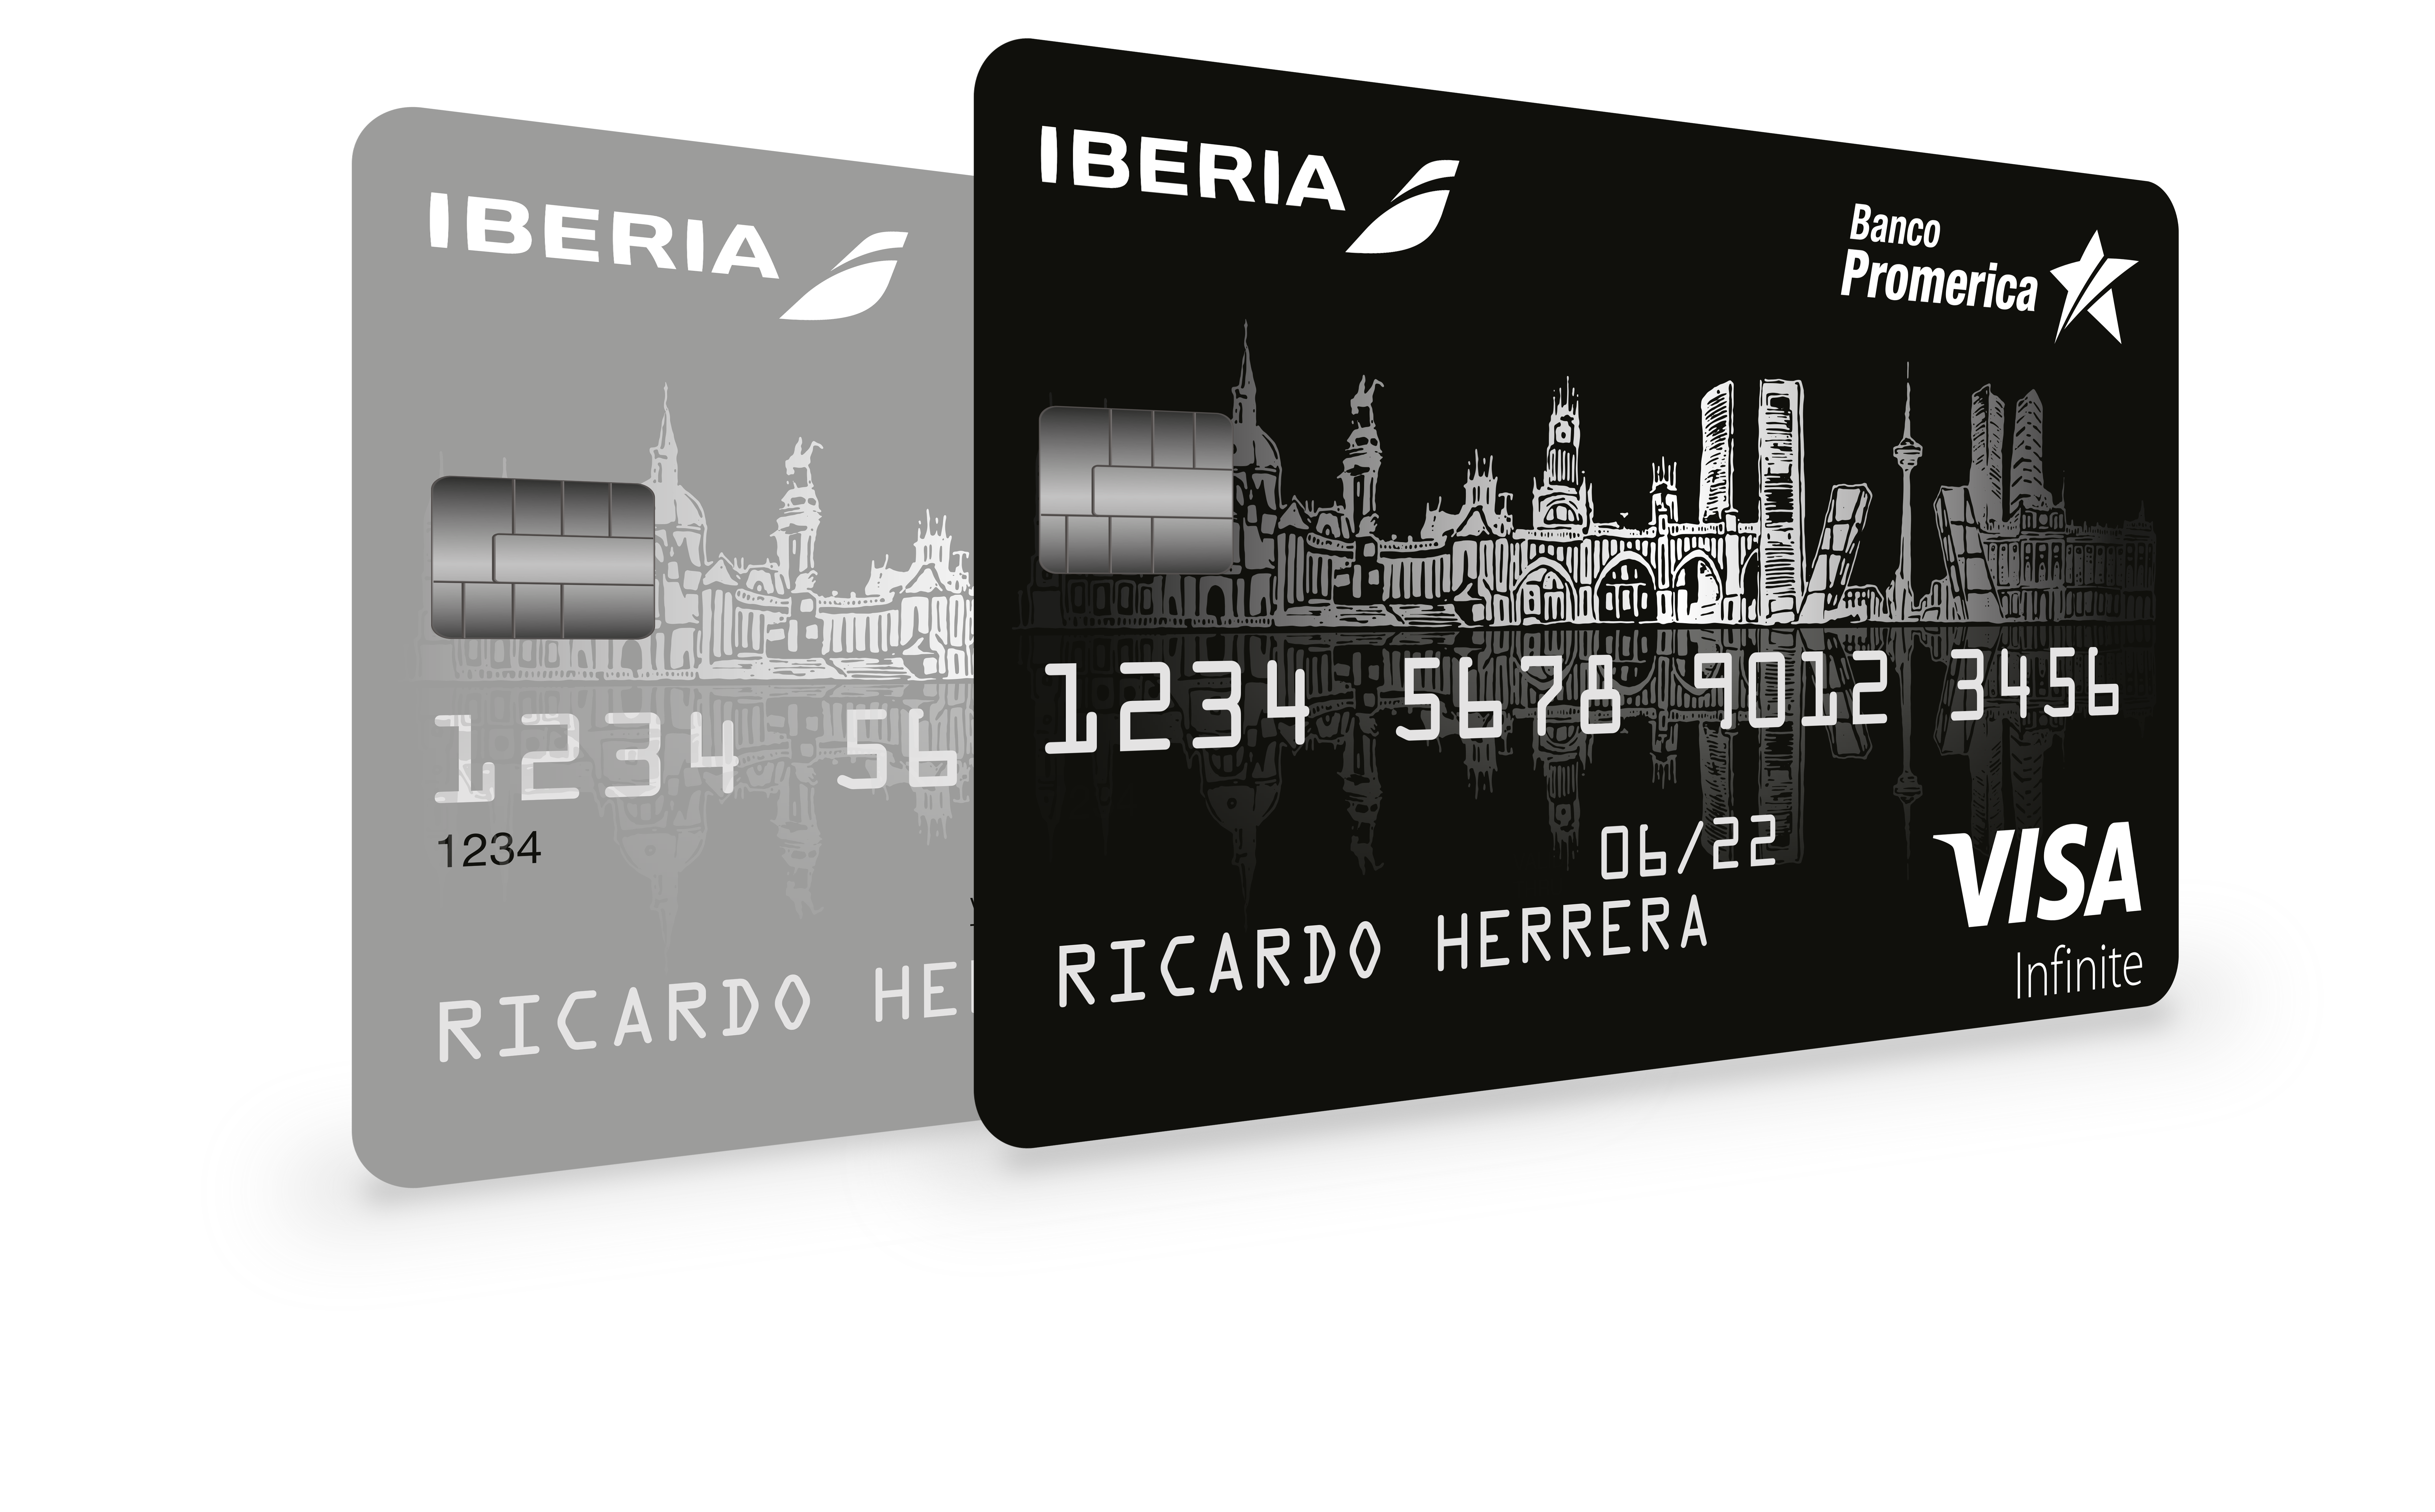 Acercamos el Mundo: Banco Promerica, Iberia y Visa lanzan tarjeta de crédito